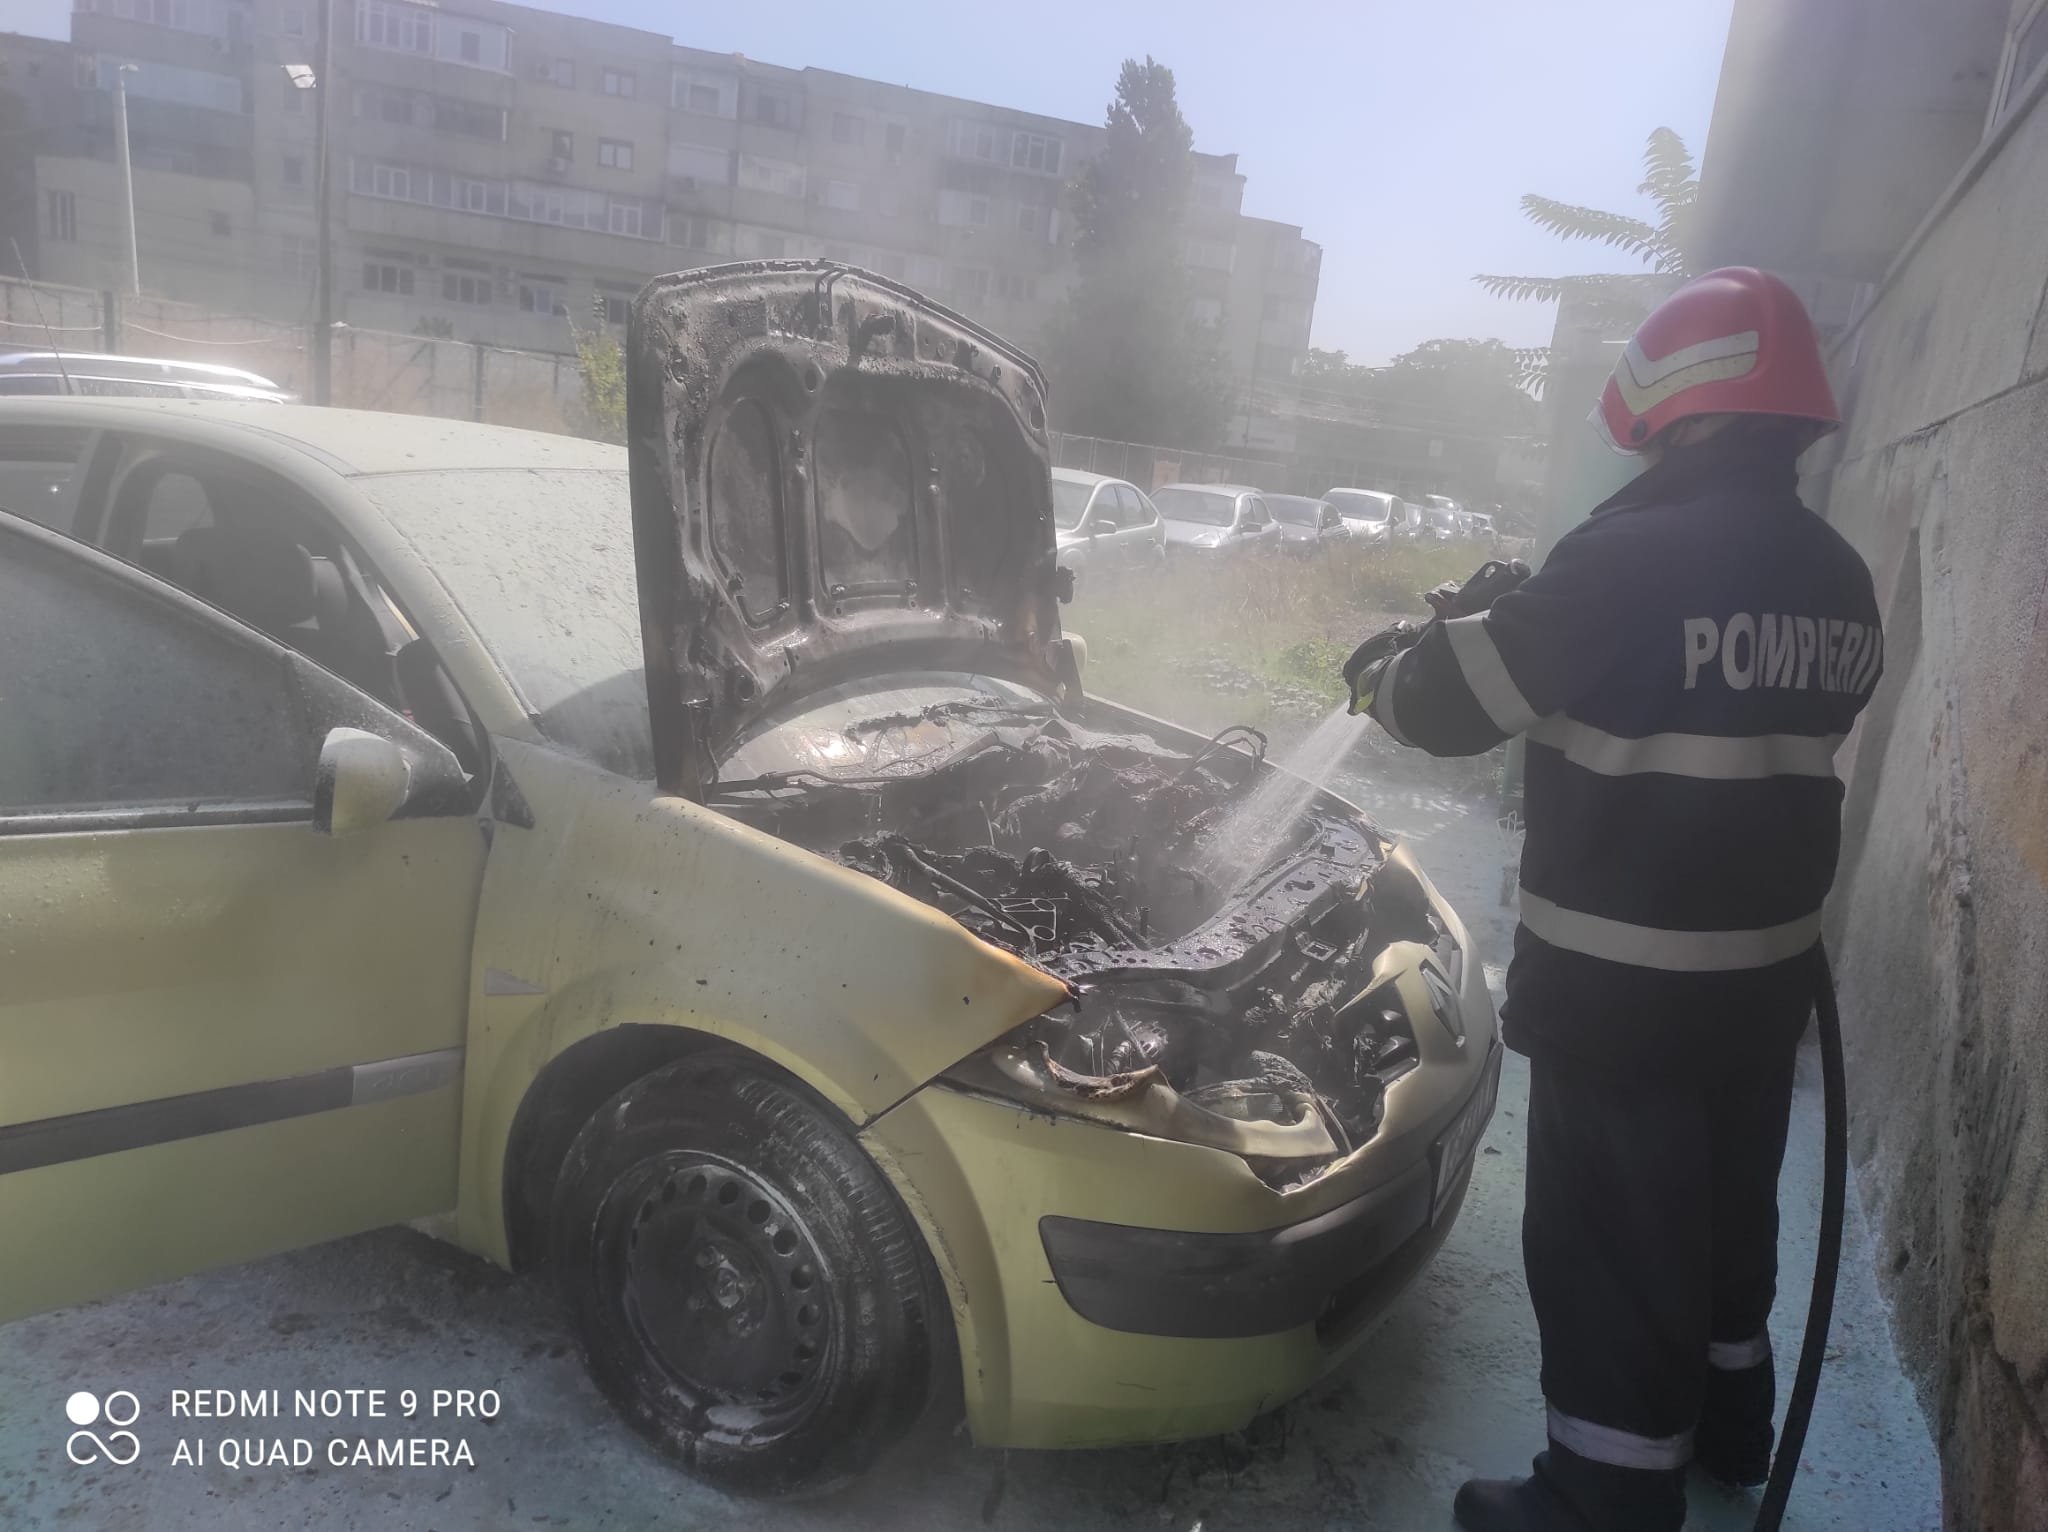  Încă o mașină a luat foc în municipiul Iași. Pompierii au intervenit prompt